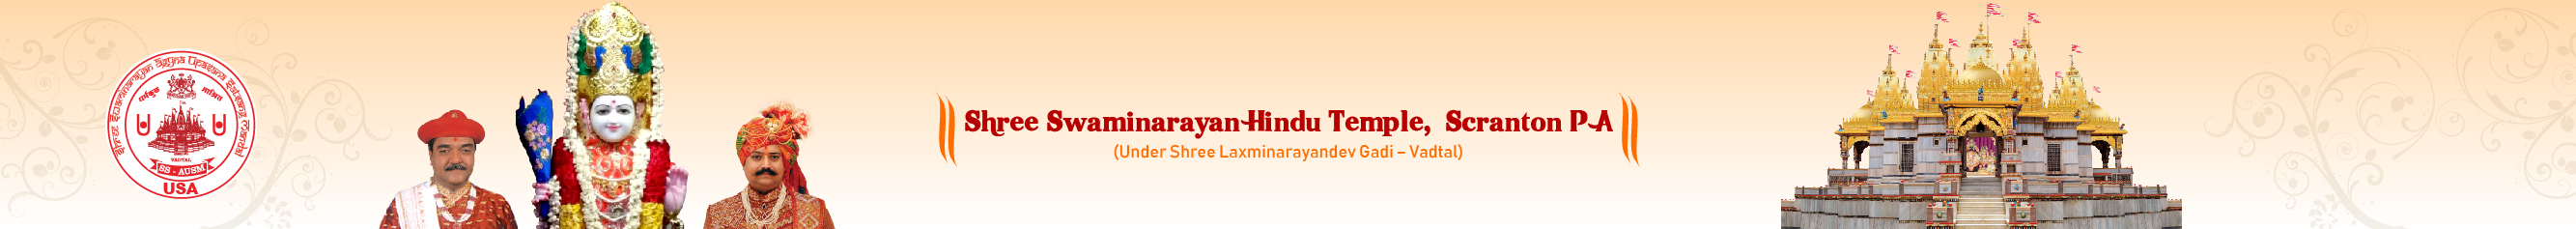 Shree Swaminarayan Temple, Scranton